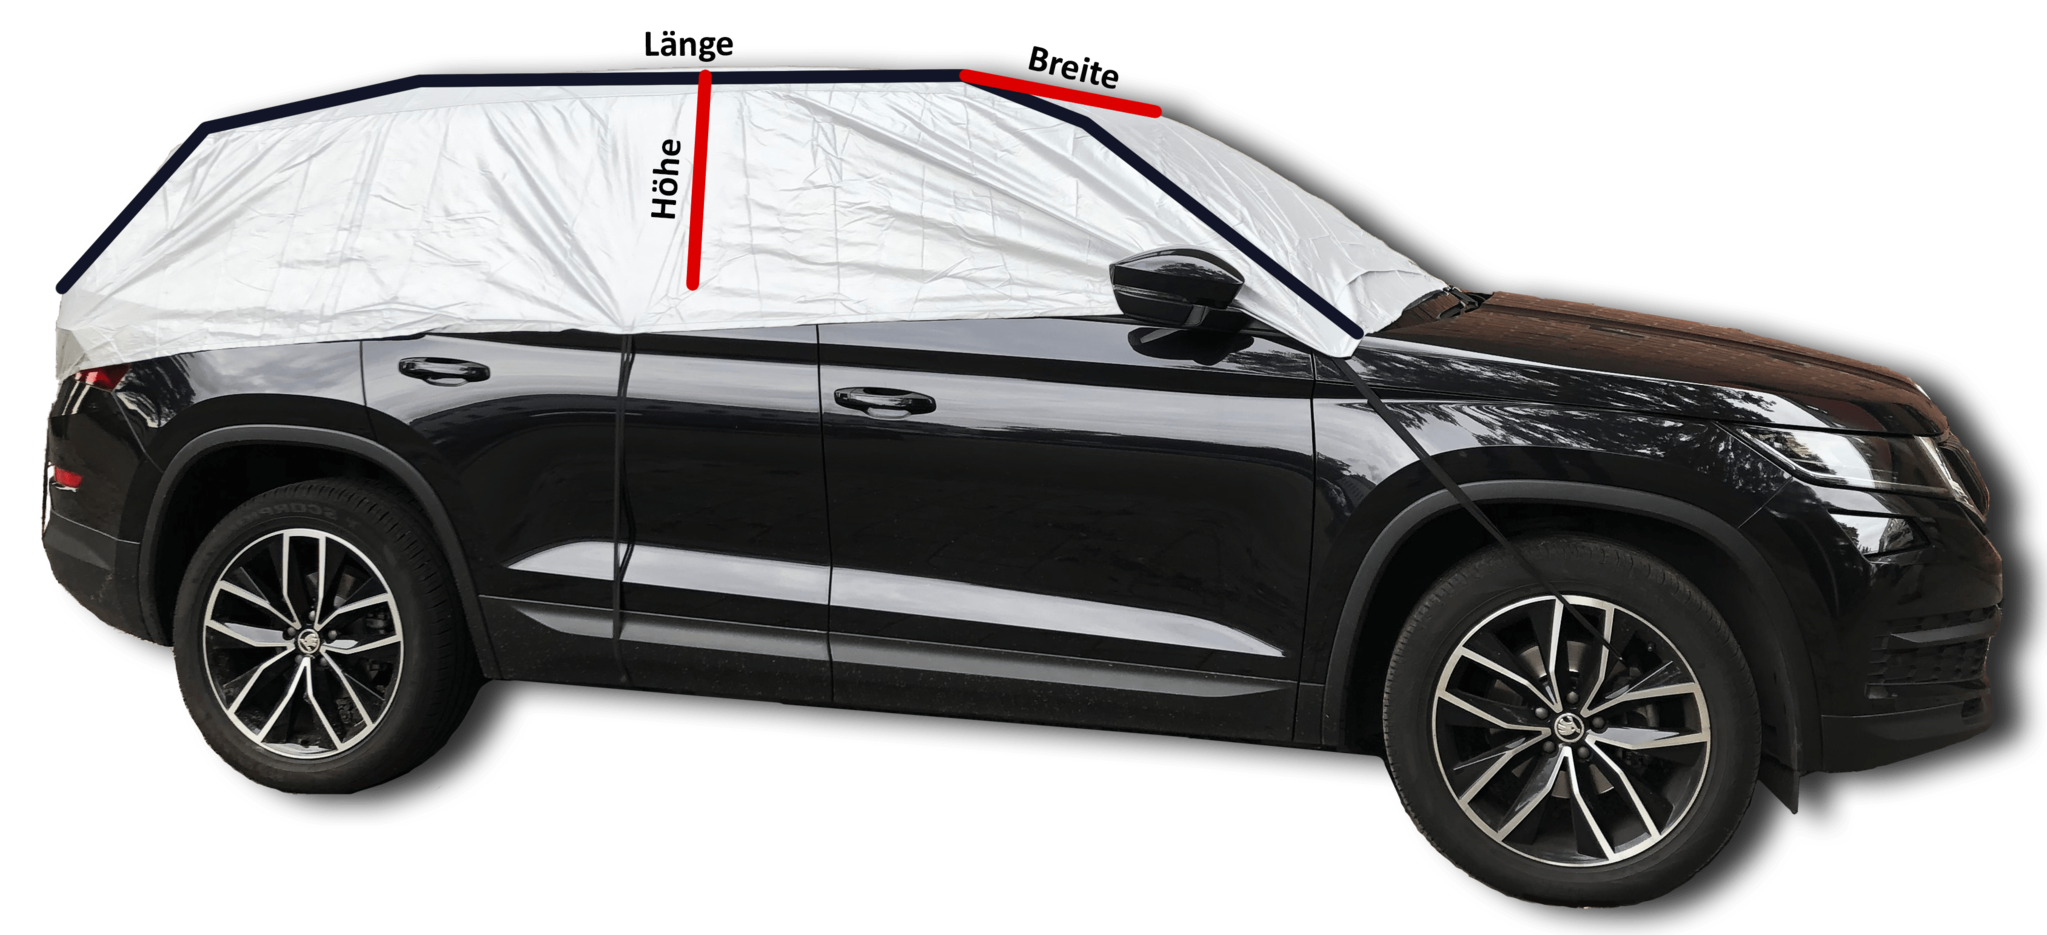 SUV abdeckung halbgarage besteht aus 100% Polyester und enthält eine wasserabweisende Schutzschicht